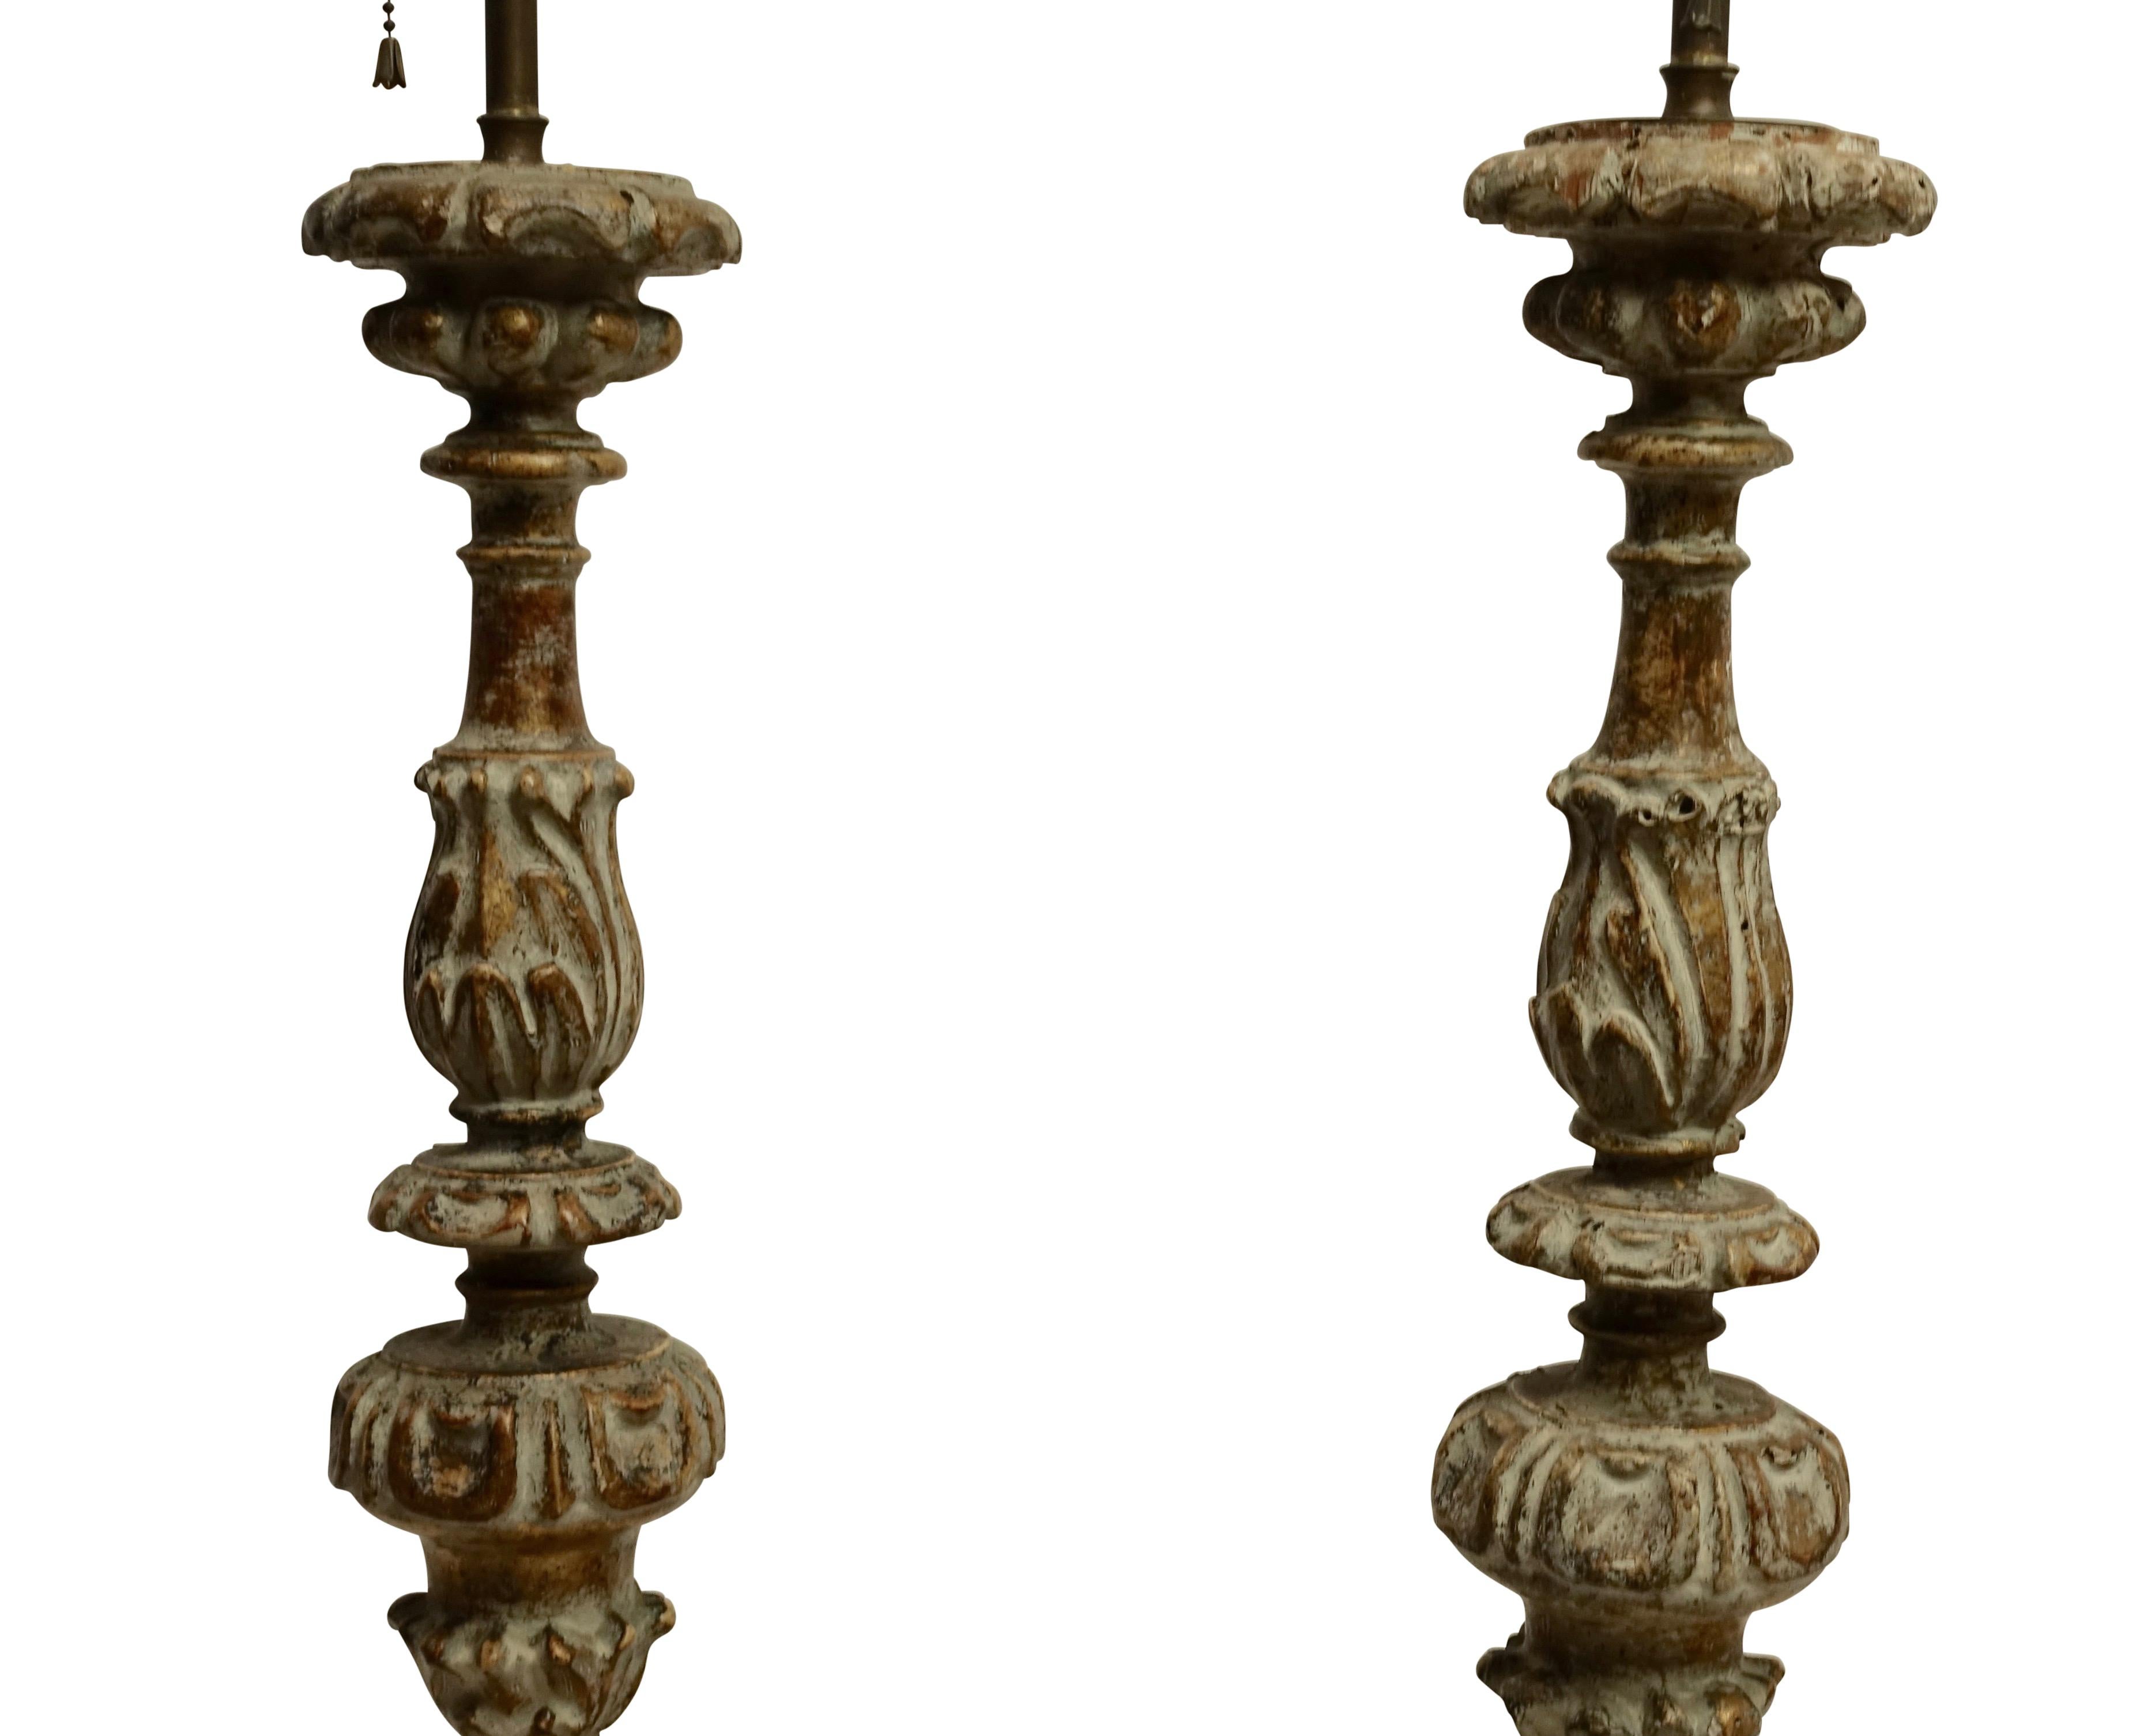 Paar geschnitzte Holz-Kerzenständer-Lampen, französisch, 18. Jahrhundert, um 1780 (Geschnitzt)